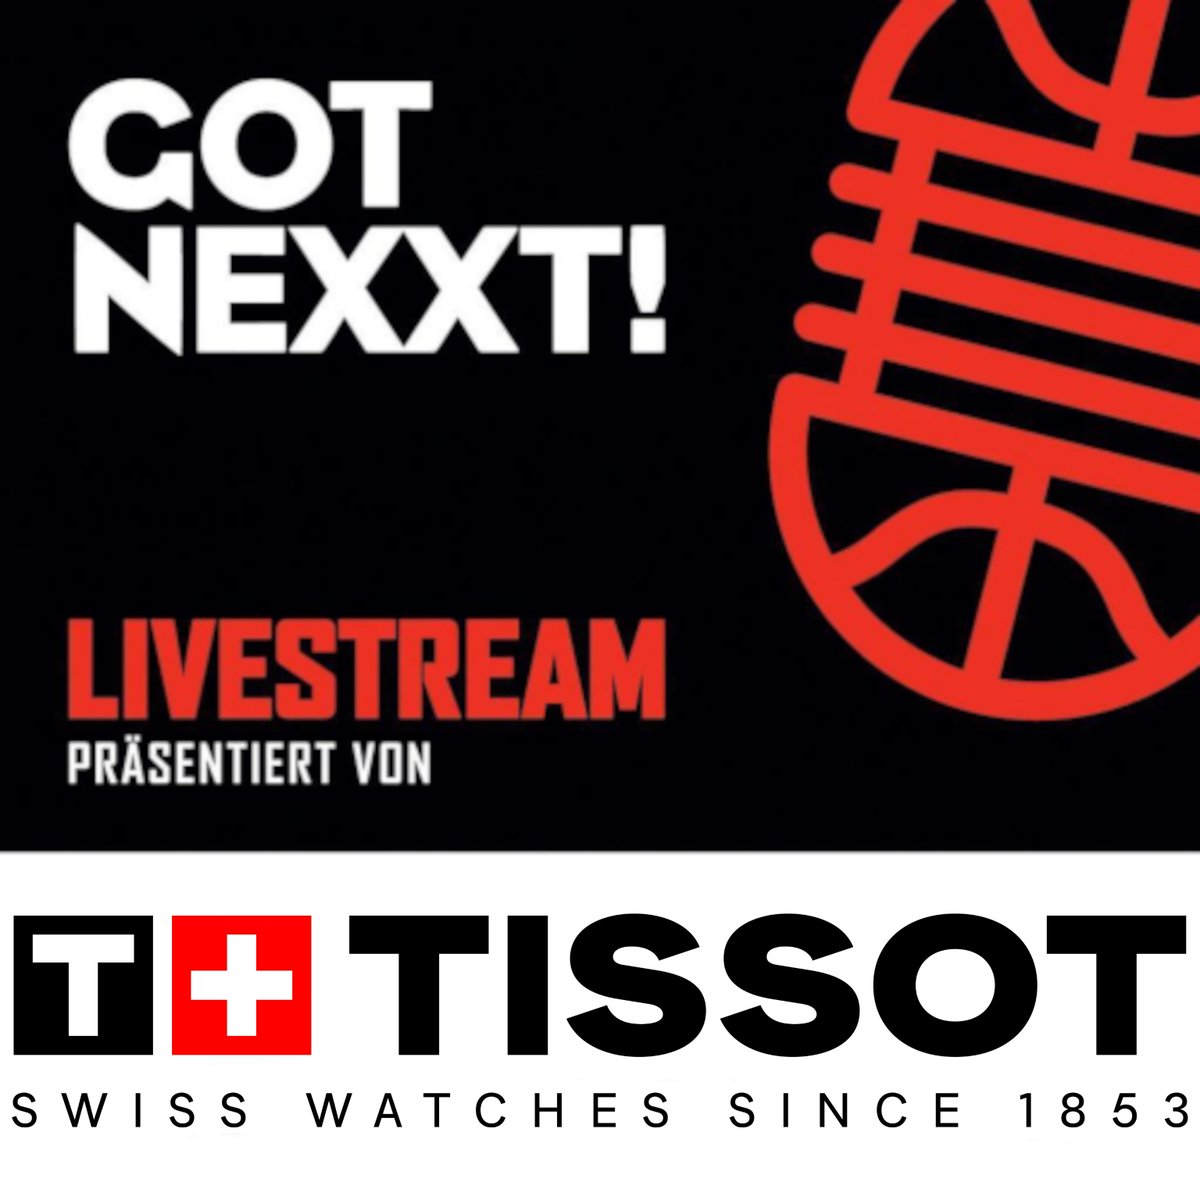 Diese Woche flüchte ich mit dem NBA-Livefragenstream presented by #tissot erneut vor der UEFA Champions League sowie dieses mal auch der Europa League auf einen anderen Sendeplatz. Freitag ab 20:00 Uhr geht es dann rund!